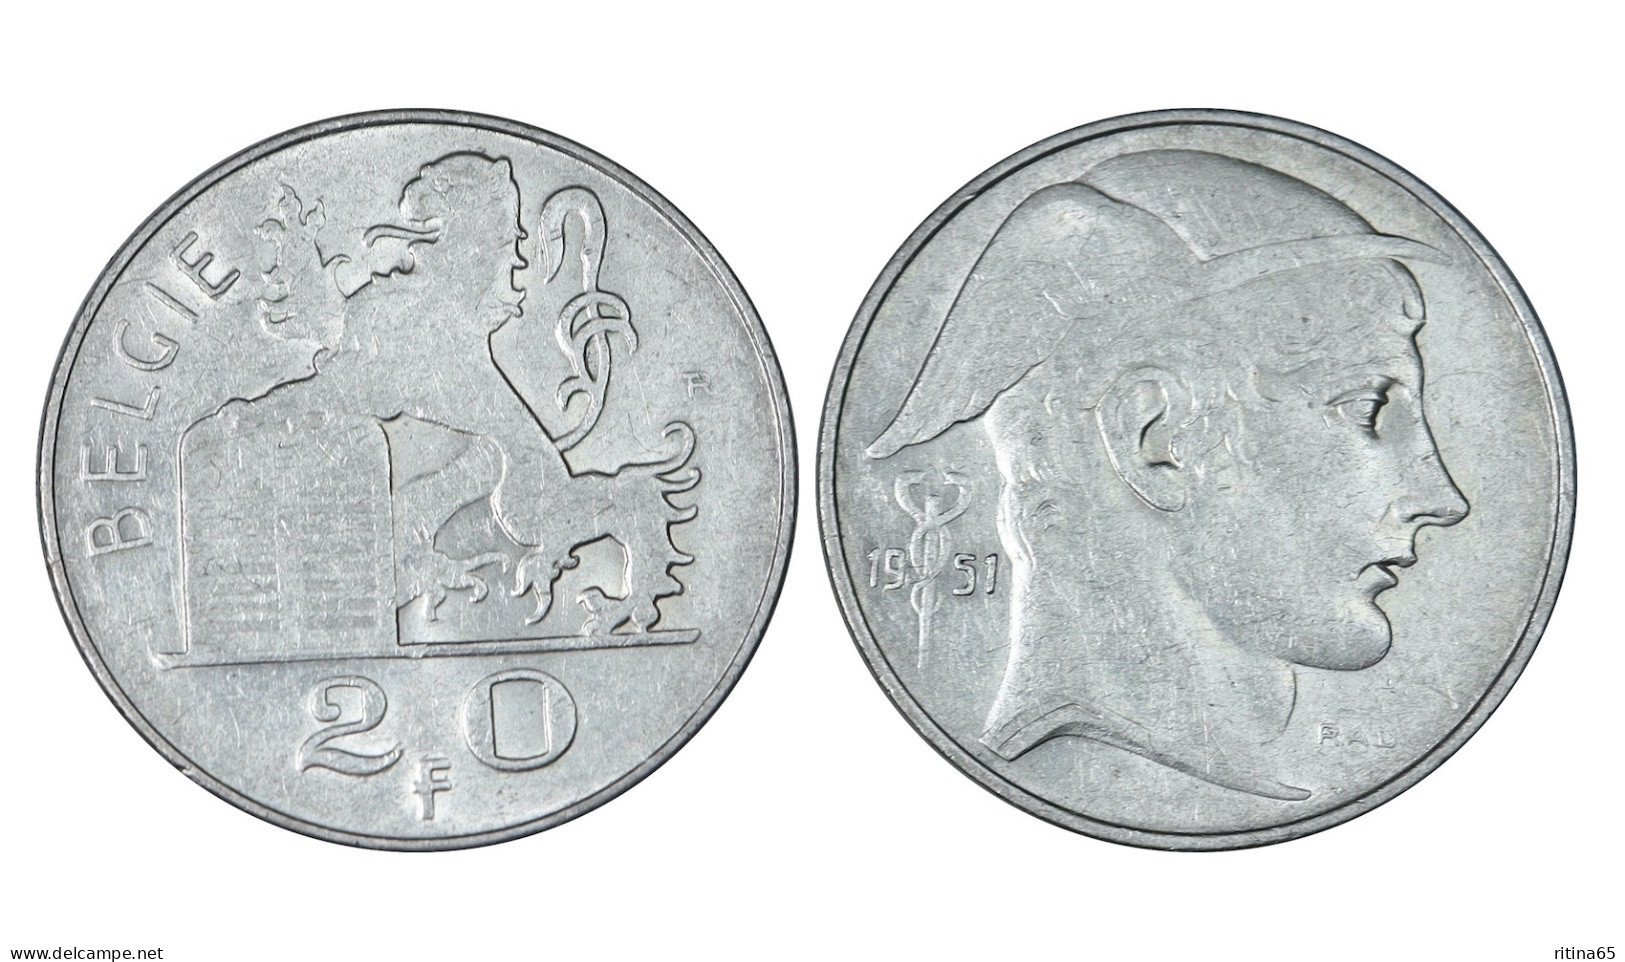 BELGIO 20 FRANCS 1951 BELGIE IN ARGENTO KM# 141 - 20 Francs